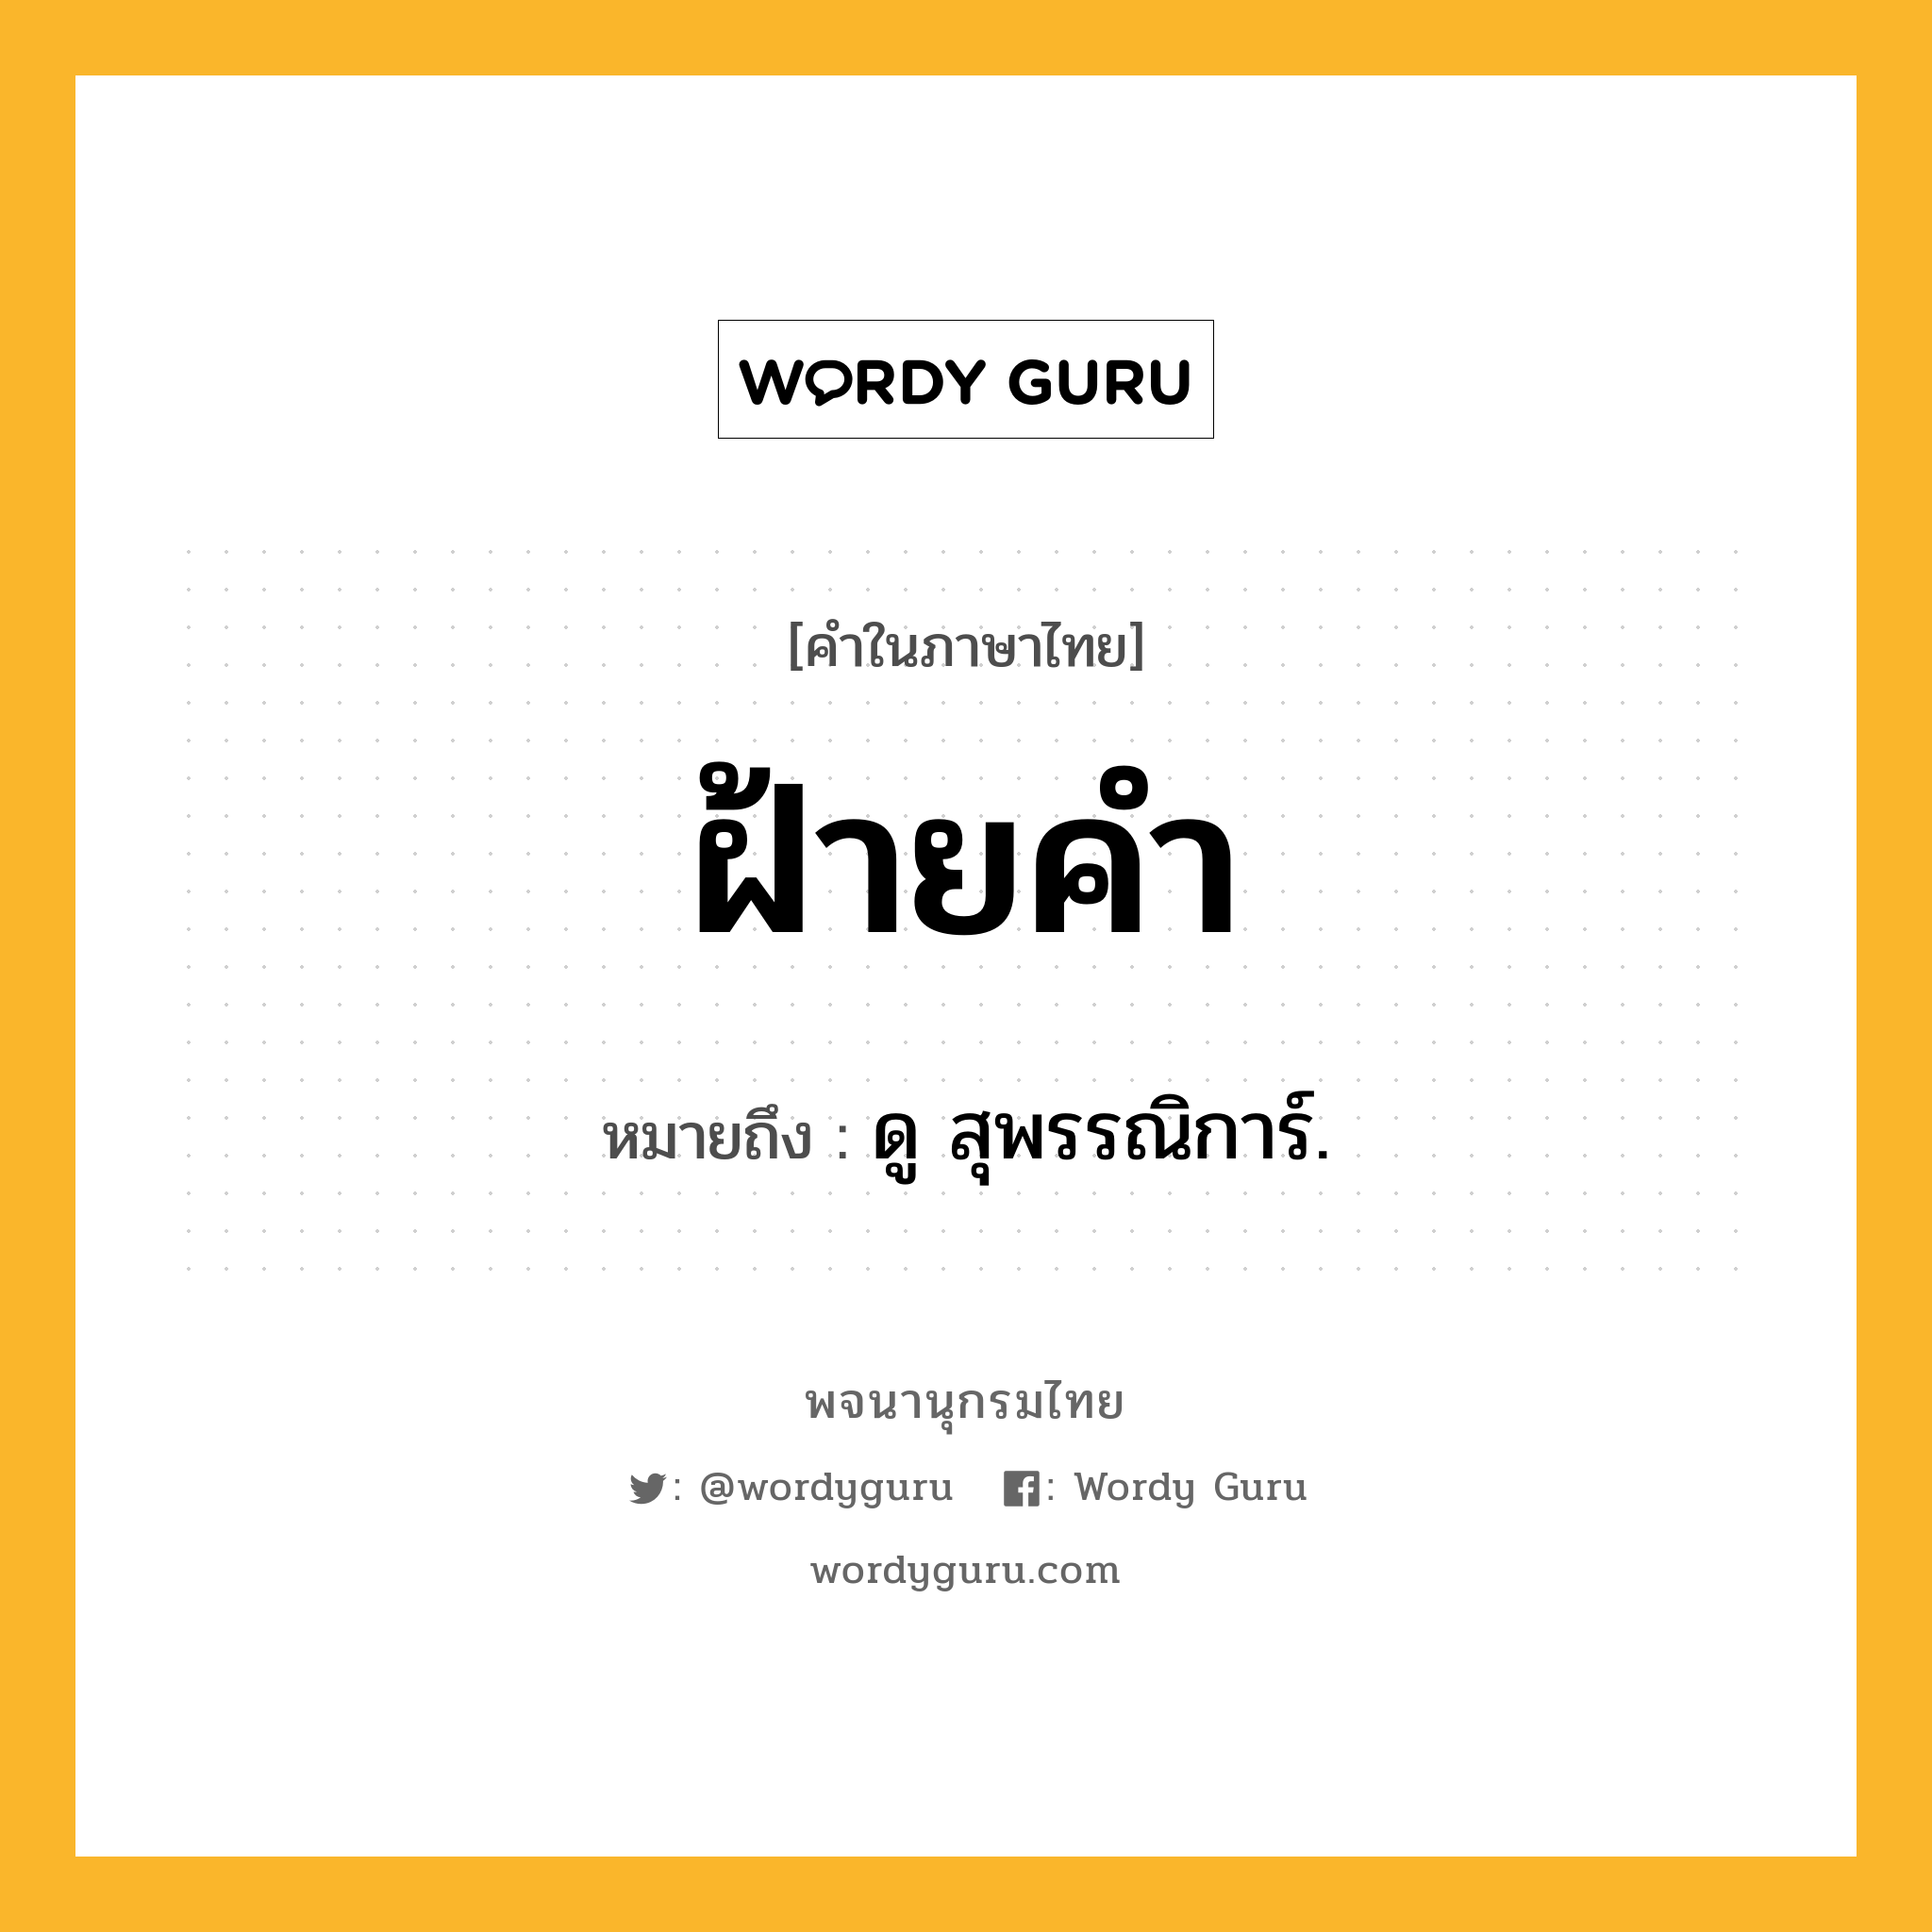 ฝ้ายคำ หมายถึงอะไร?, คำในภาษาไทย ฝ้ายคำ หมายถึง ดู สุพรรณิการ์.